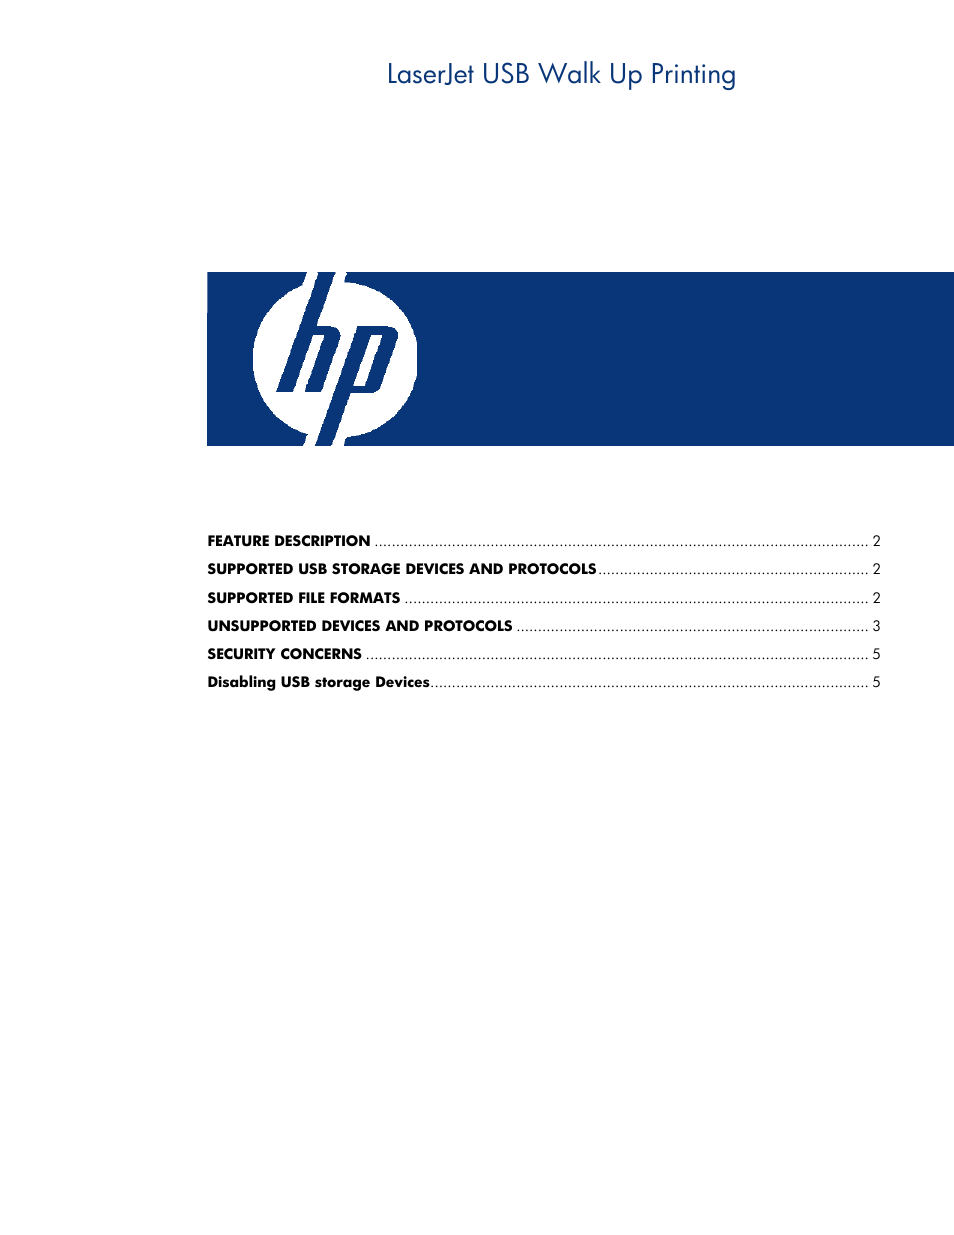 Hewlett-Packard LaserJet 3015 USB Walkup printing